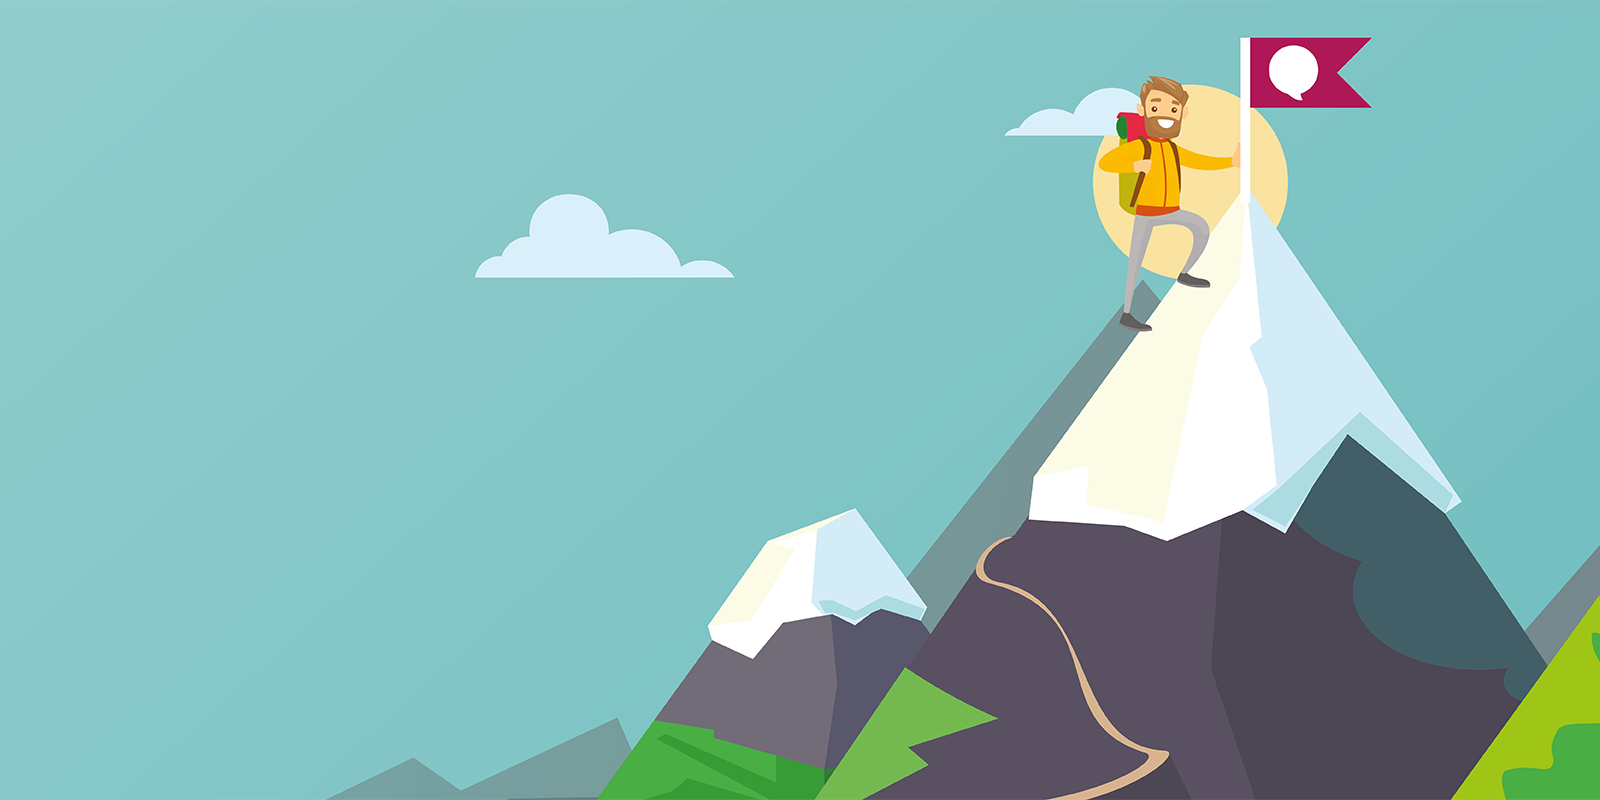 Cartoon image of a person climbing a mountain.